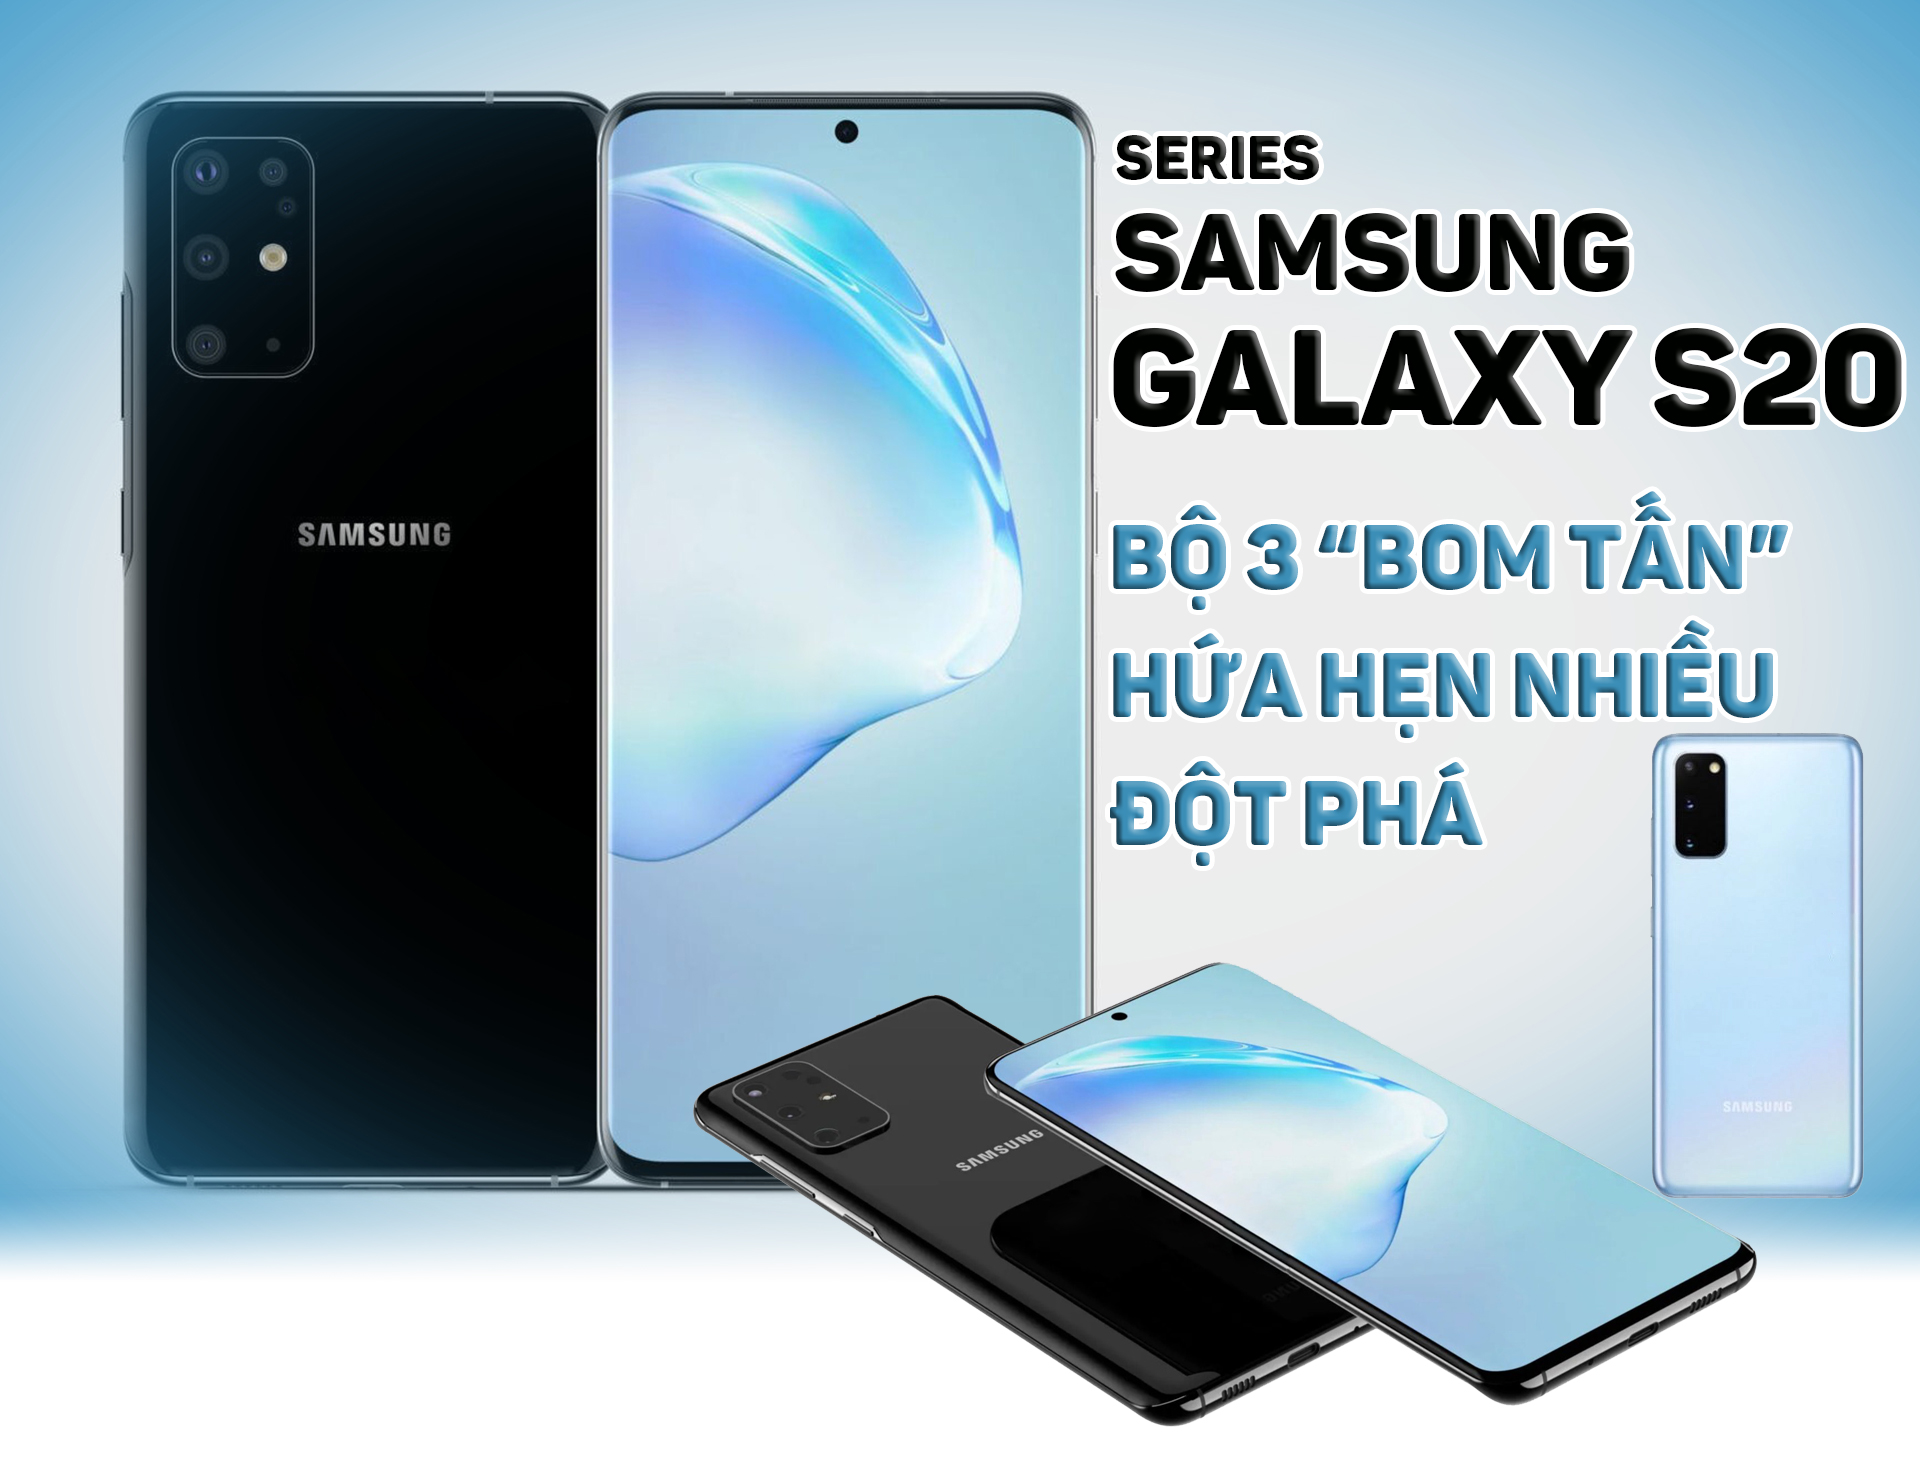 Series Samsung Galaxy S20: Bộ ba siêu phẩm hứa hẹn nhiều đột phá - 1